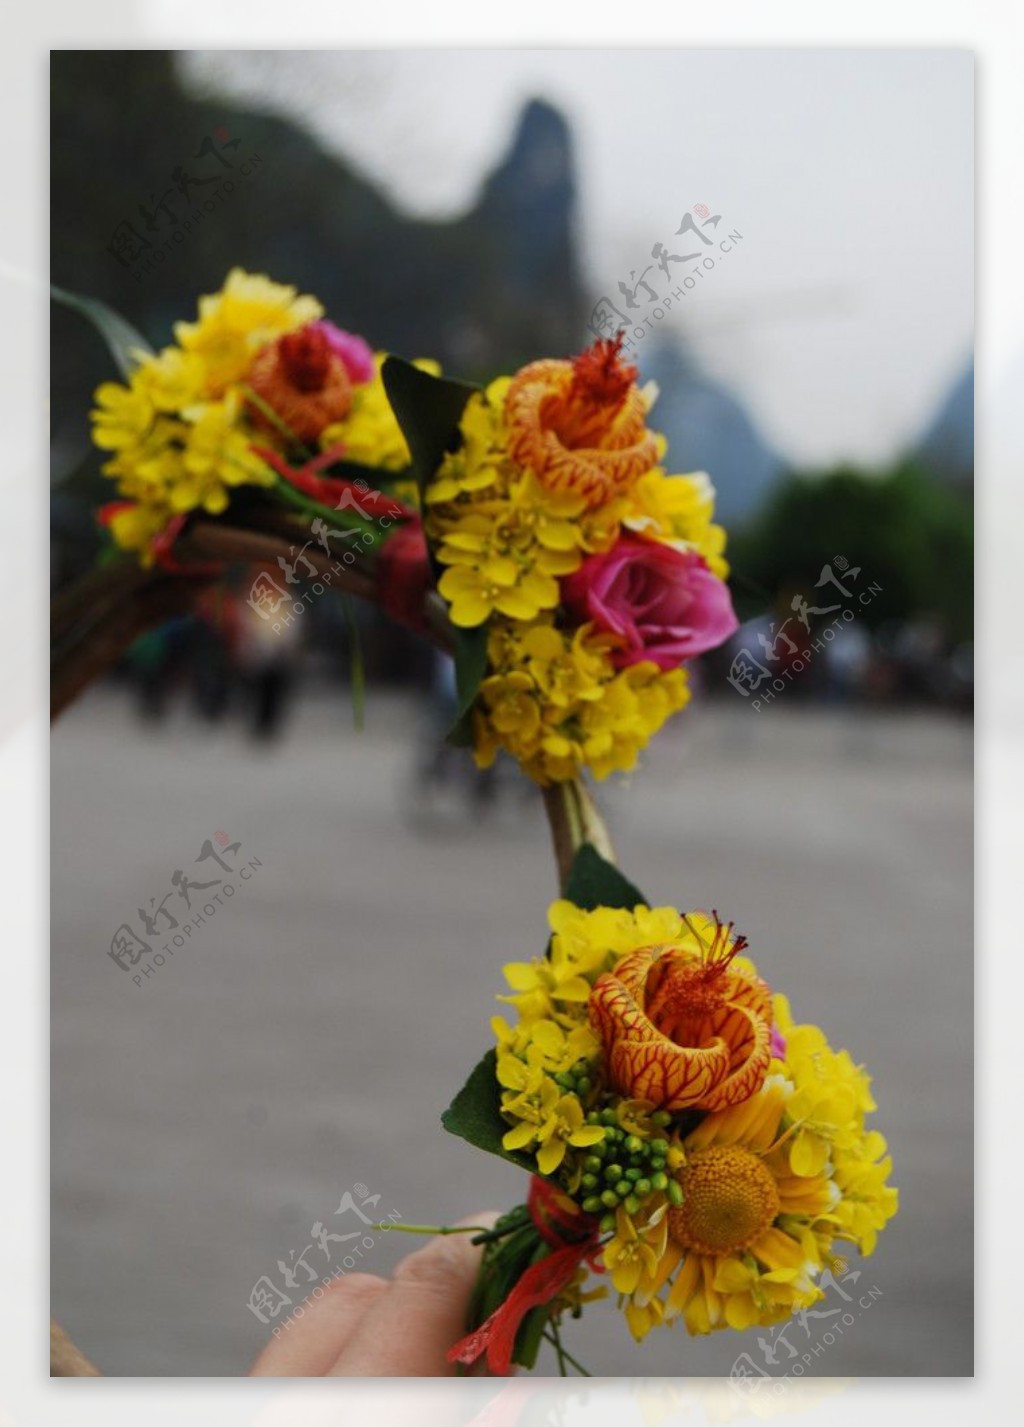 街上卖花. 人造墓地花. 花店细节. 塑料花 库存图片. 图片 包括有 批次, 花瓣, 火炮, 从事园艺 - 242497907